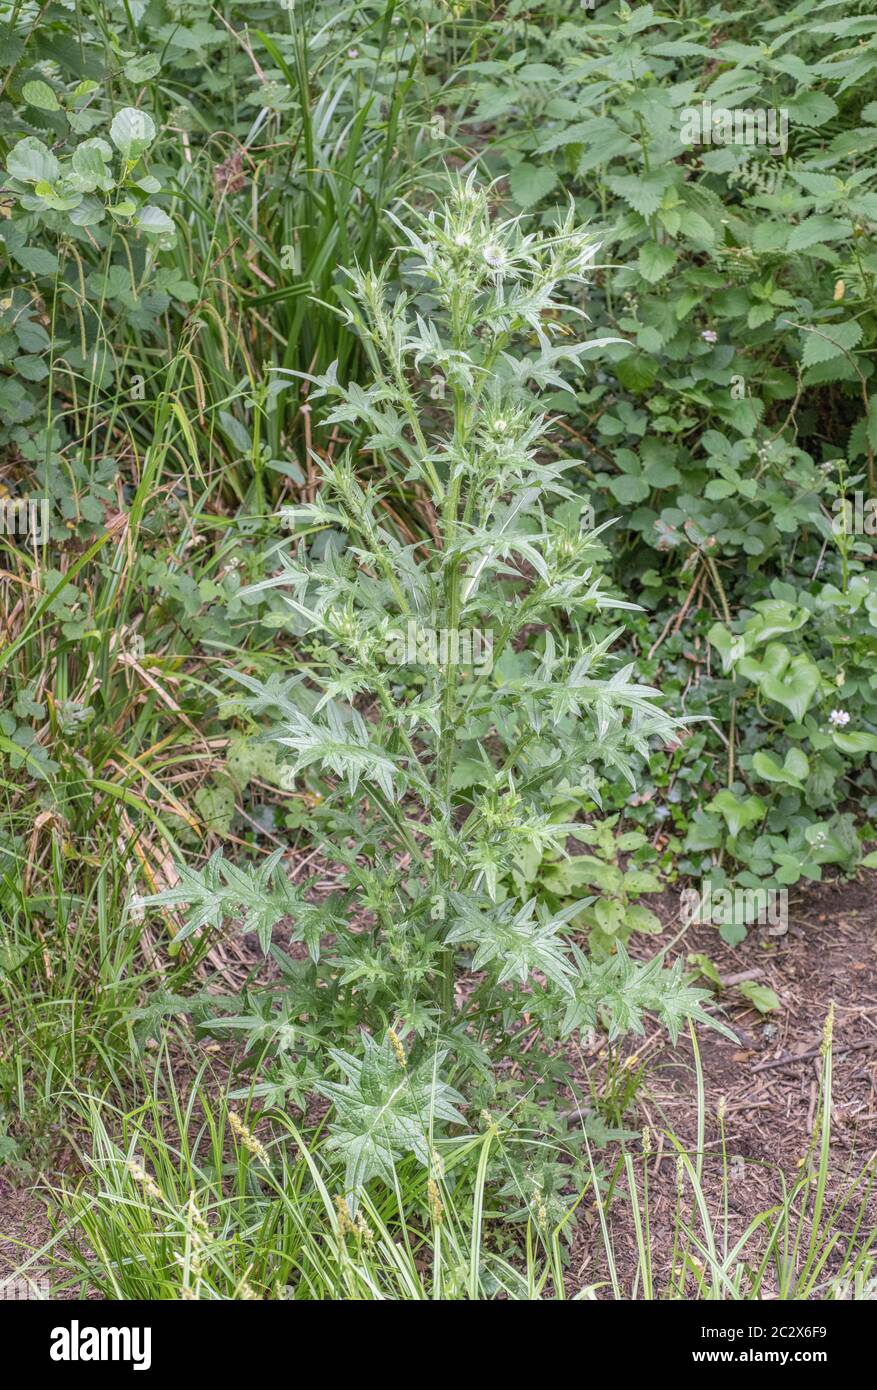 Prerrorino de la lanza Thistle / Cirsium vulgare que se ciente solo en el hedgerow del campo. La maleza agrícola común del Reino Unido, también comestible si está preparada correctamente. Foto de stock